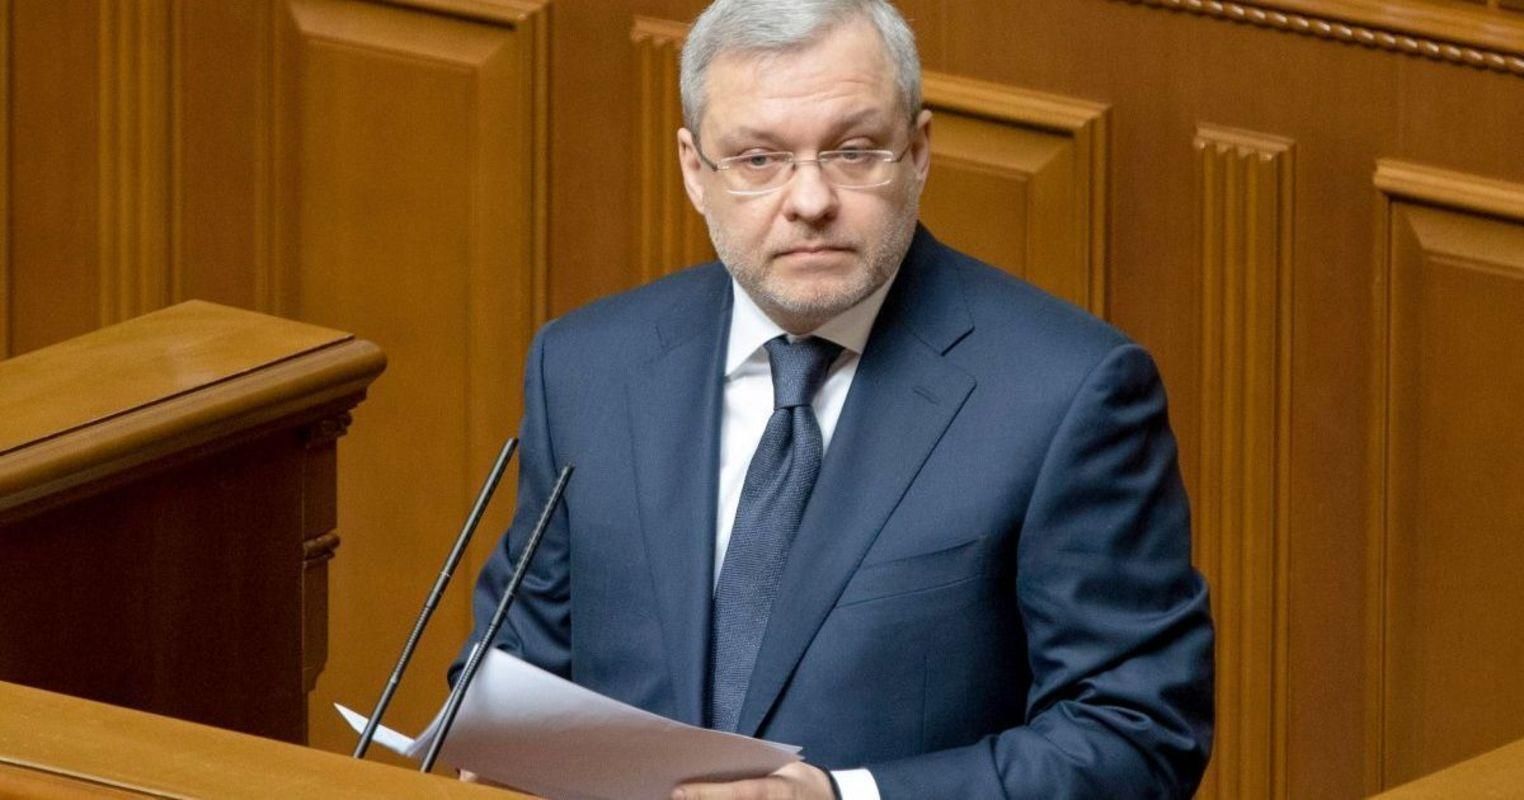 Зеленский ввел министра энергетики Галущенко в состав СНБО